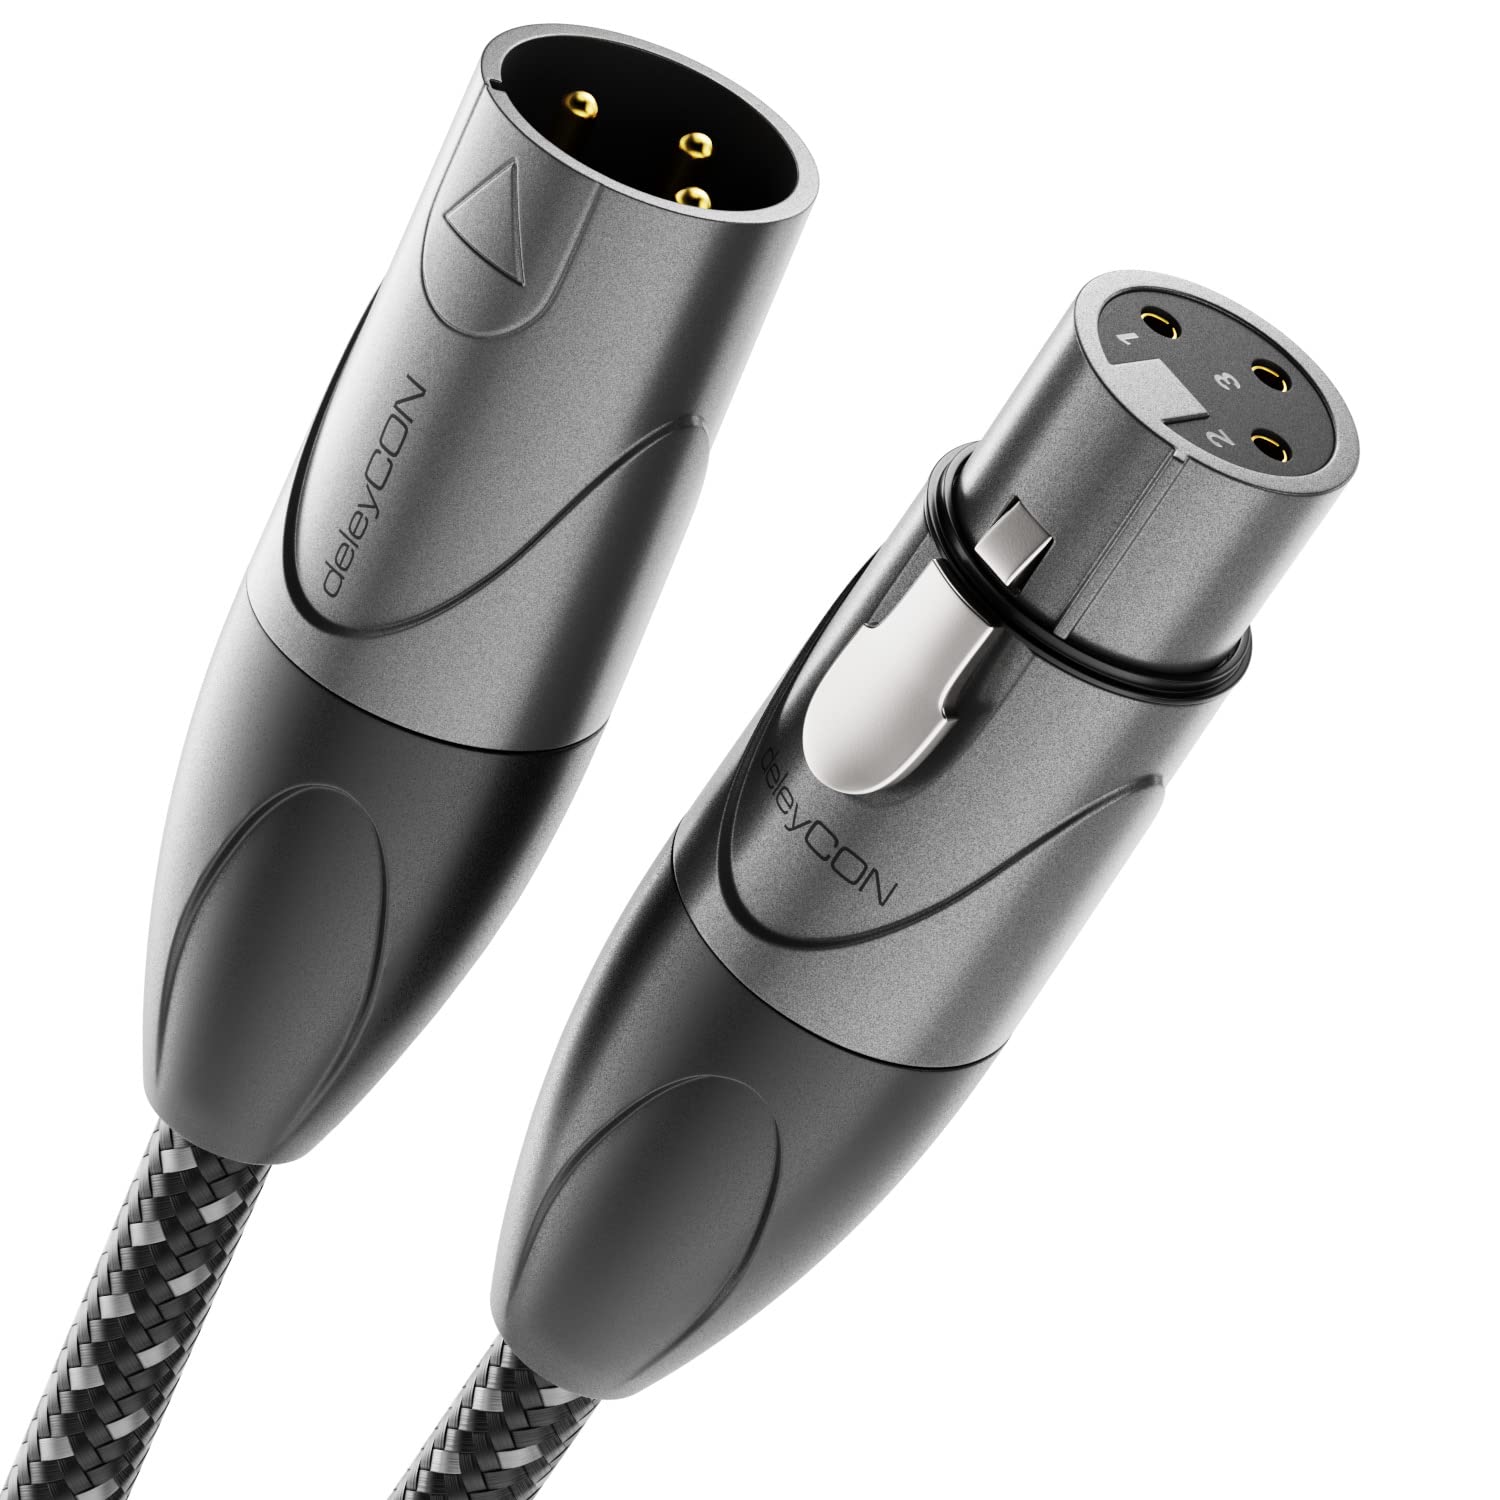 deleyCON 10m XLR Audio Kabel - Studio Qualität - aus reinem OFC Kupfer (AWG21) - Mikrofonkabel mit Baumwollmantel - mit Metallverriegelung & Vergoldeten Kontakten - 3 Polig DMX